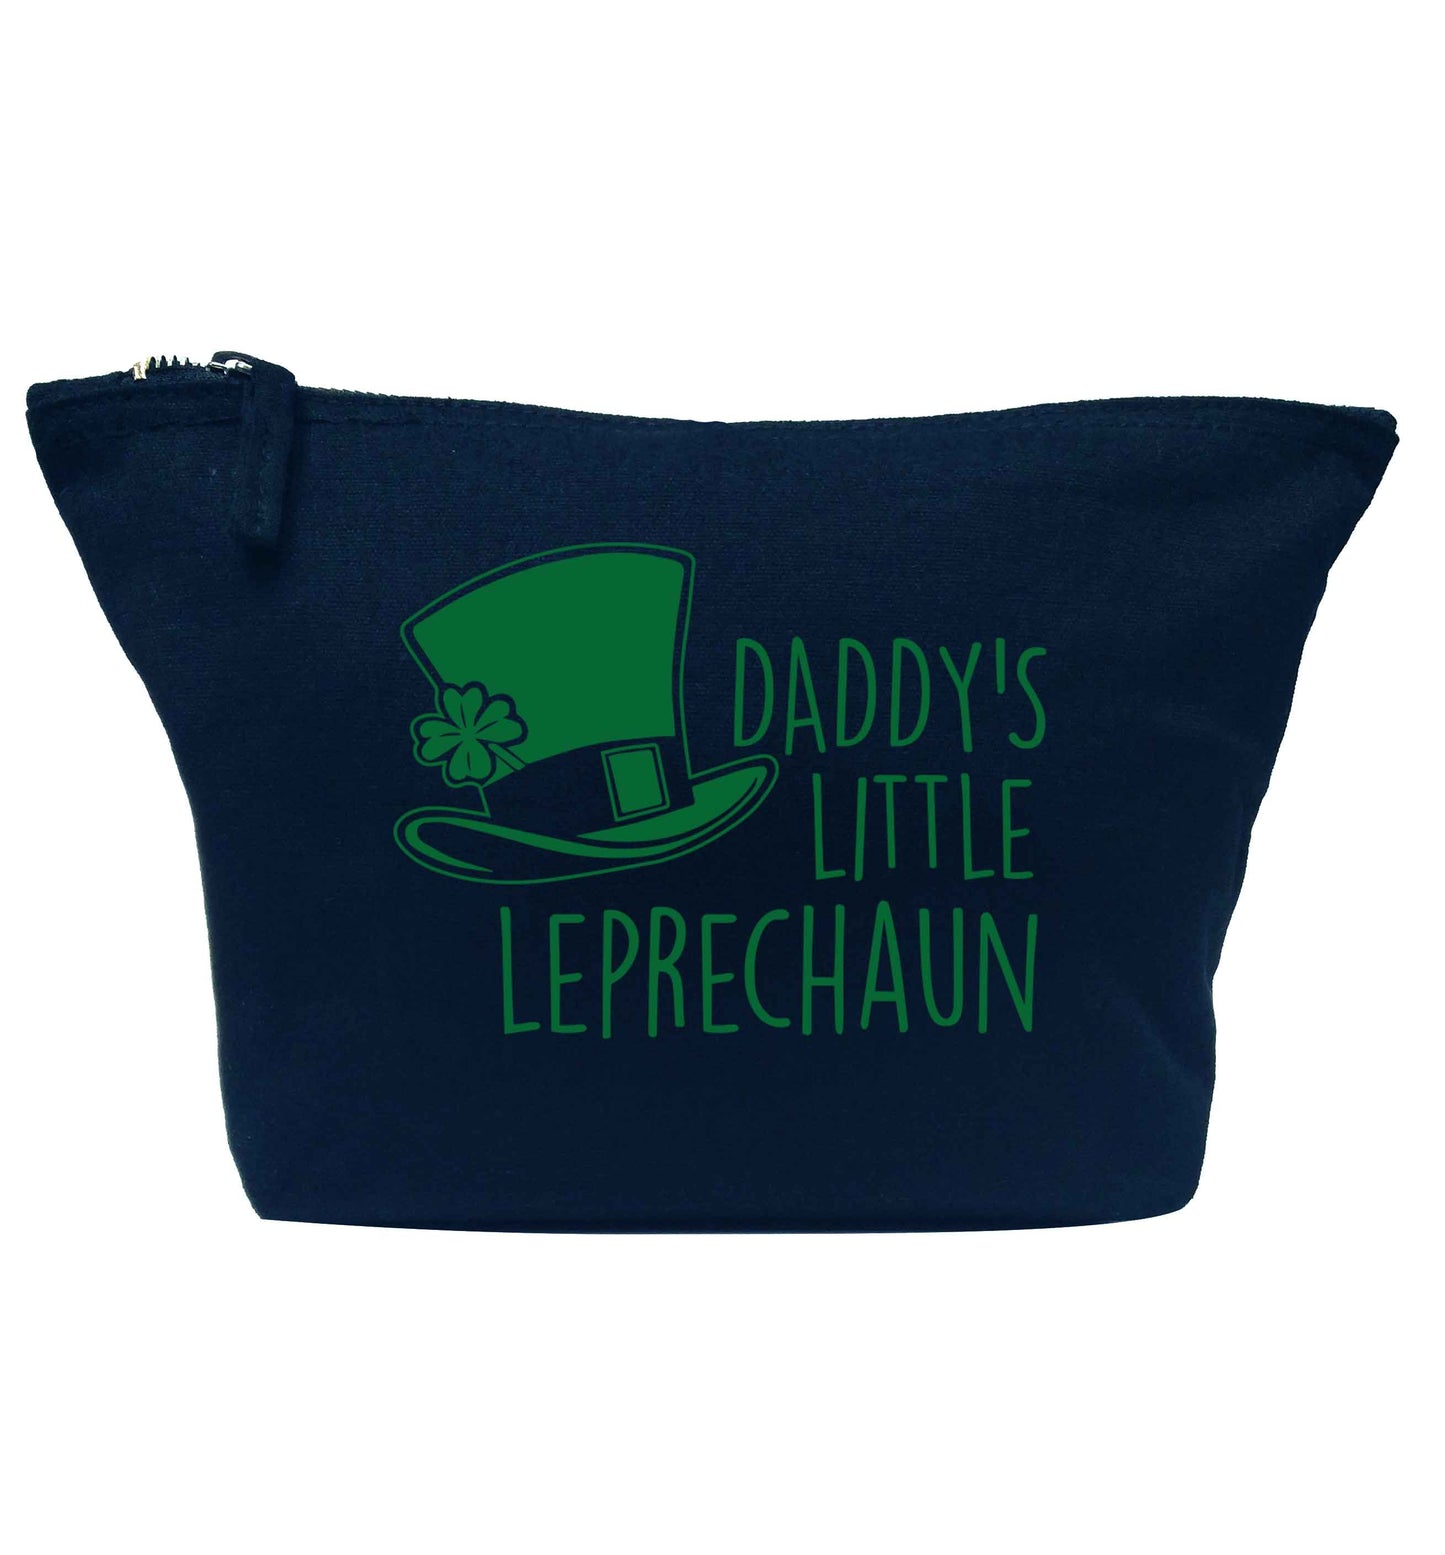 Daddy's little leprechaun navy makeup bag